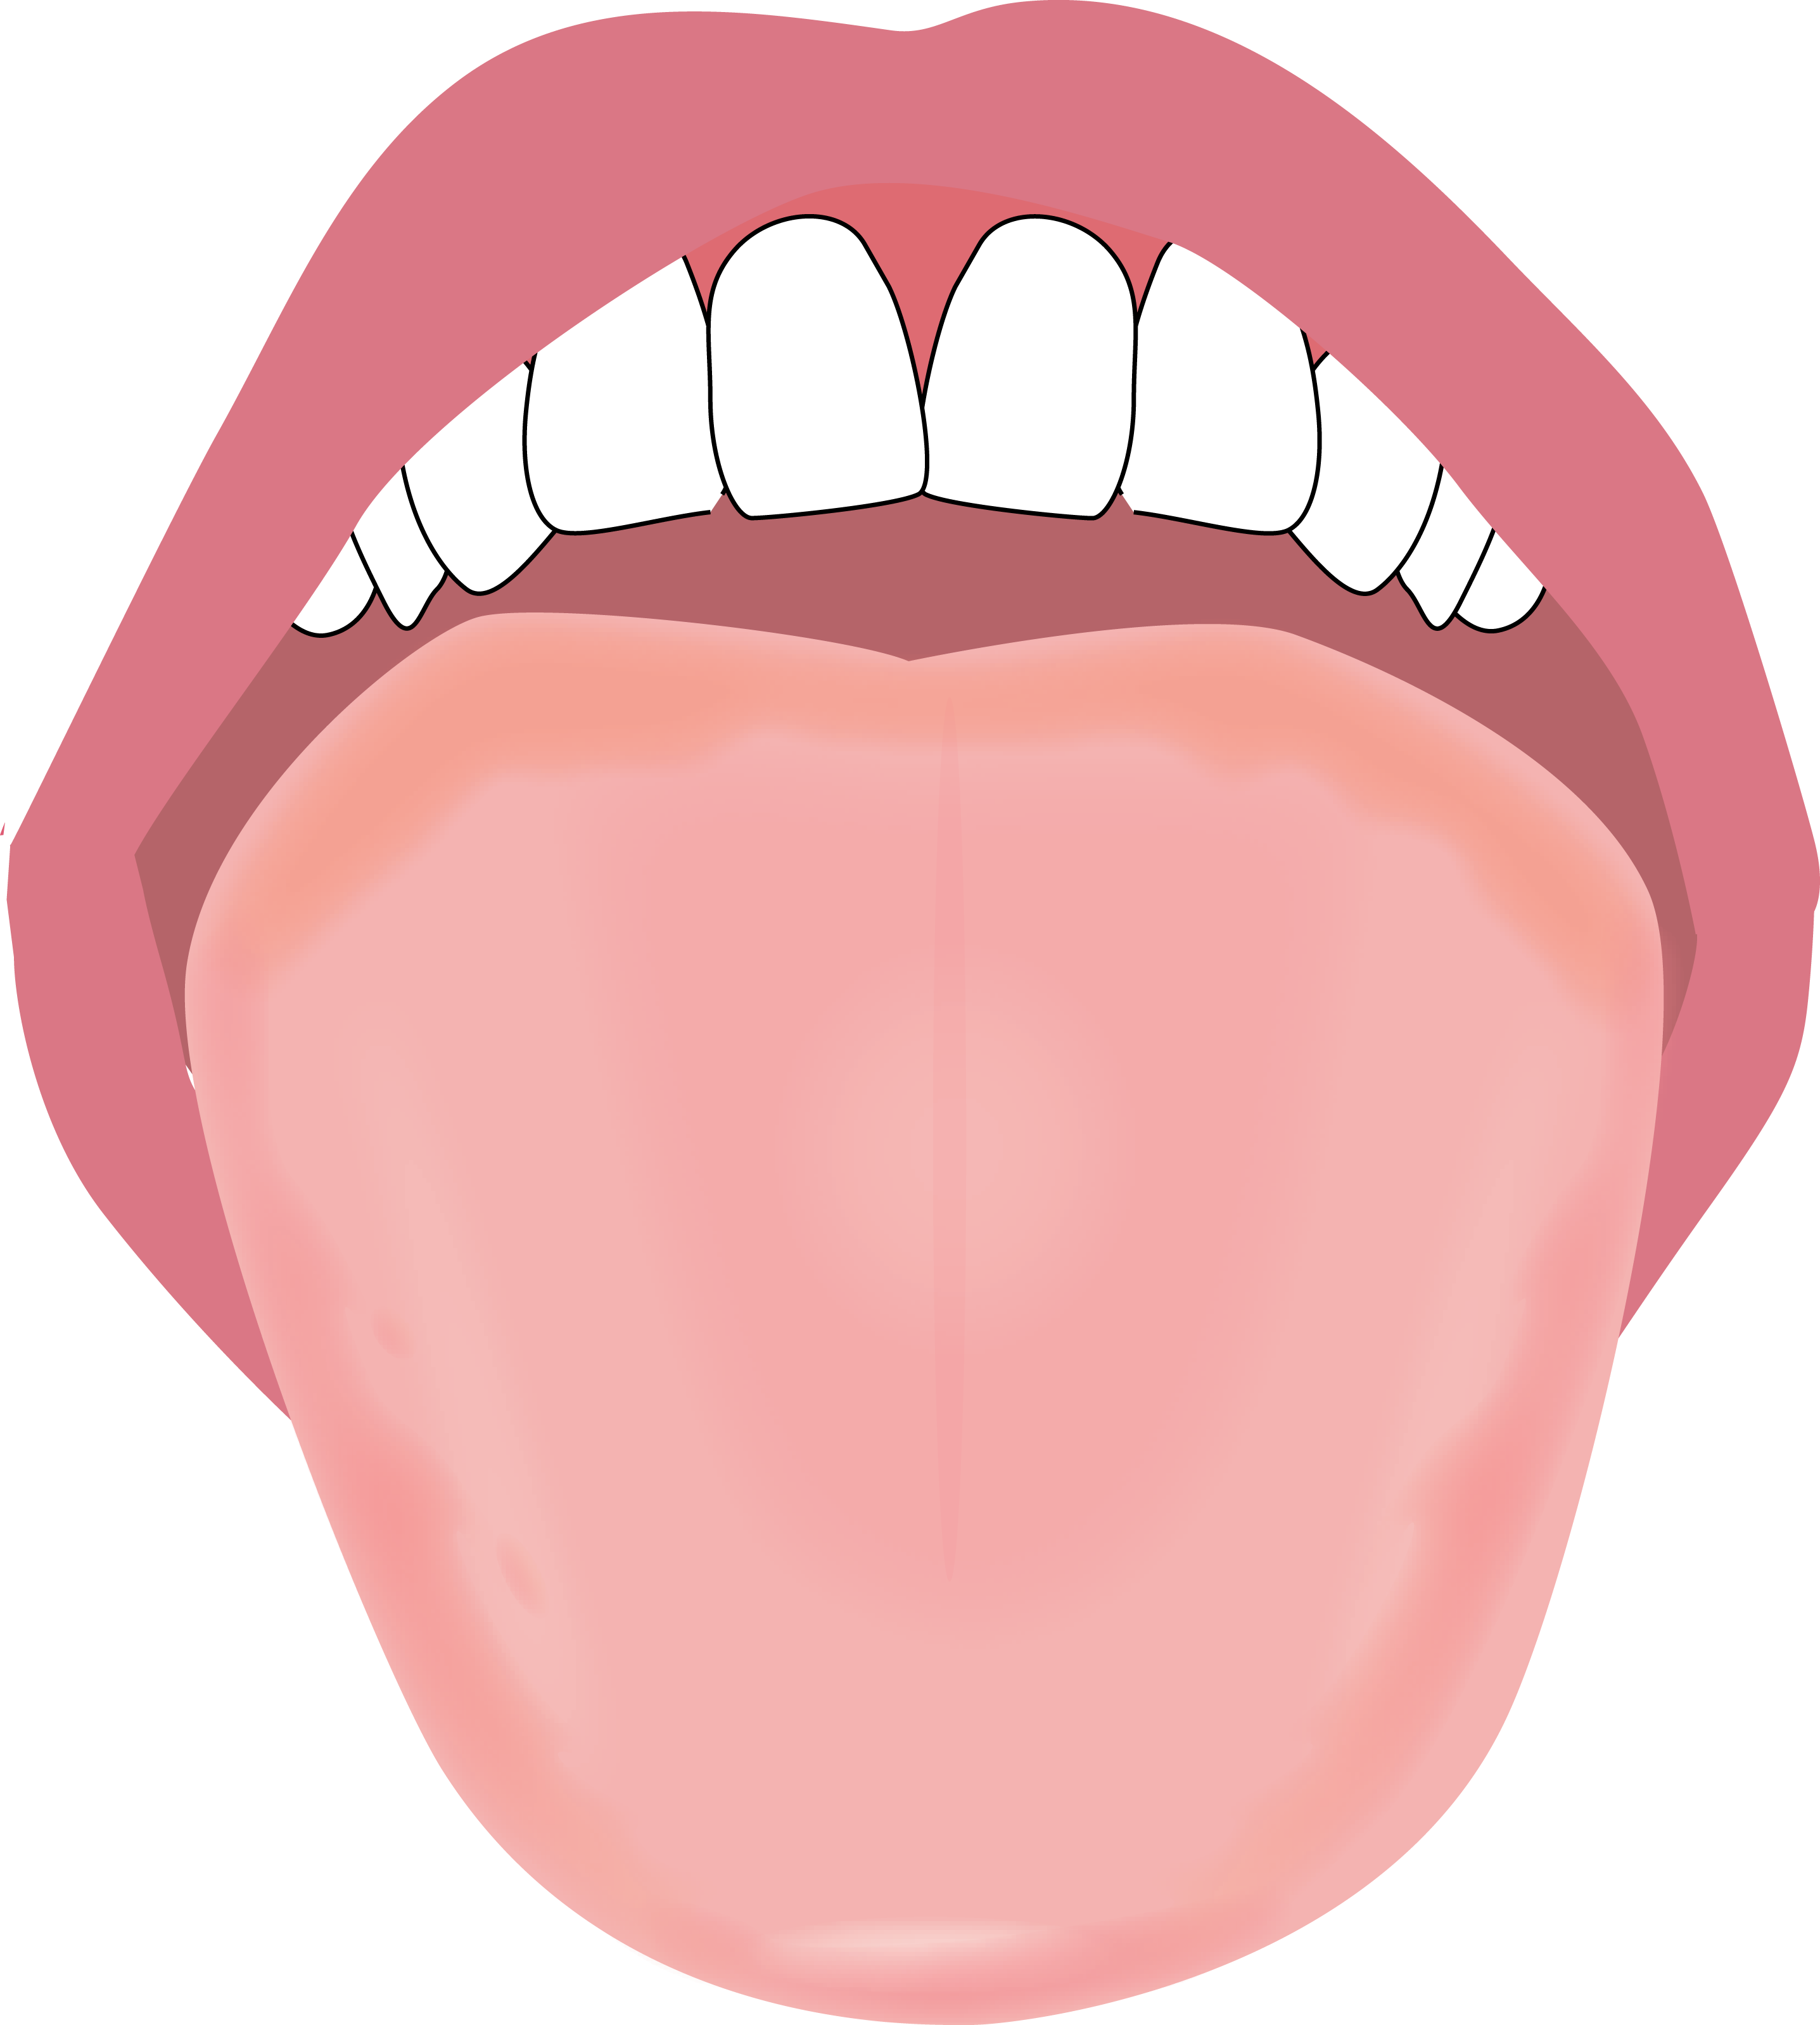 舌のイラスト描きました やましろ歯科口腔外科 口腔外科 口腔内科 福岡で親知らずの抜歯 ドライマウス 睡眠時無呼吸症候群 口腔がん健診のことならやましろ歯科口腔外科へ 日本口腔外科学会認定専門医が治療します